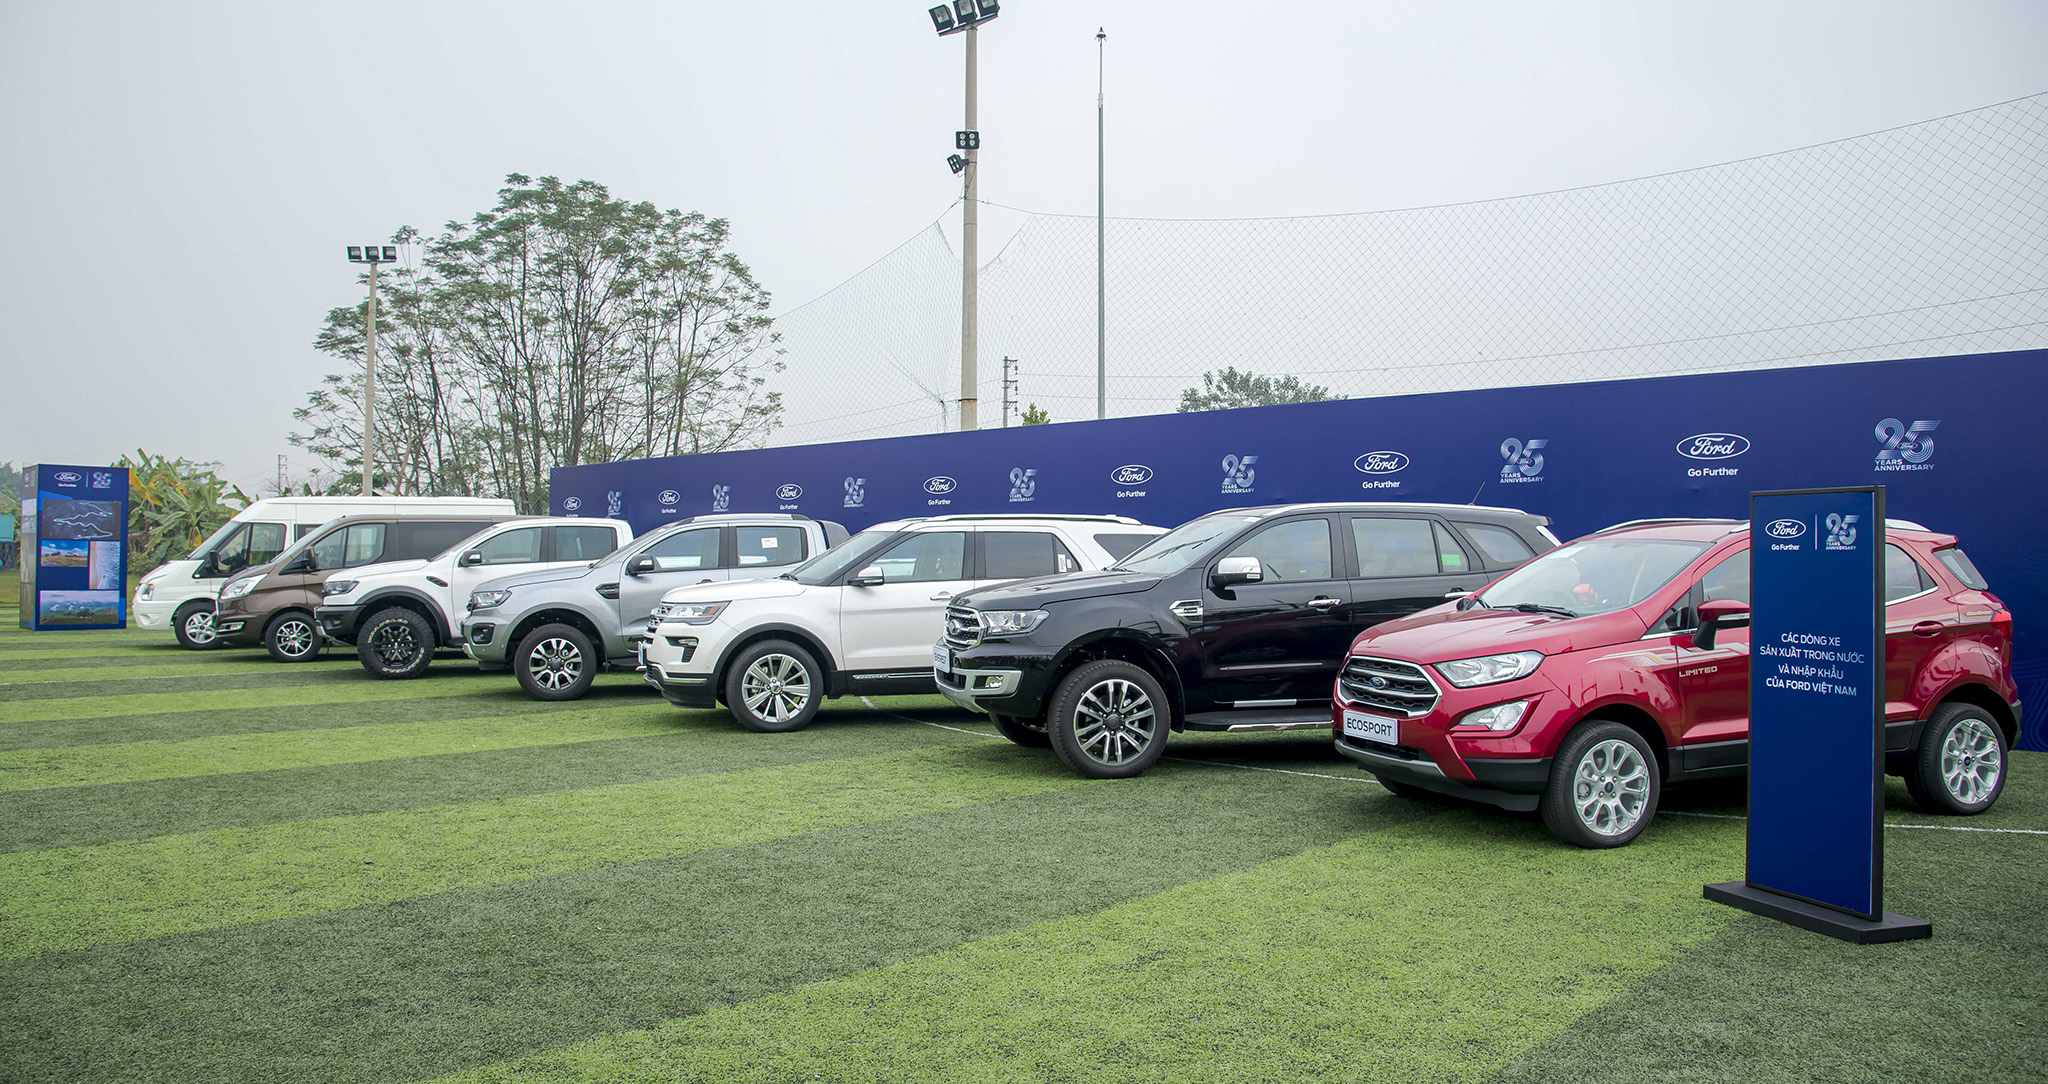 Ford Việt Nam mở rộng nhà máy, chuẩn bị lắp ráp thêm nhiều mẫu xe